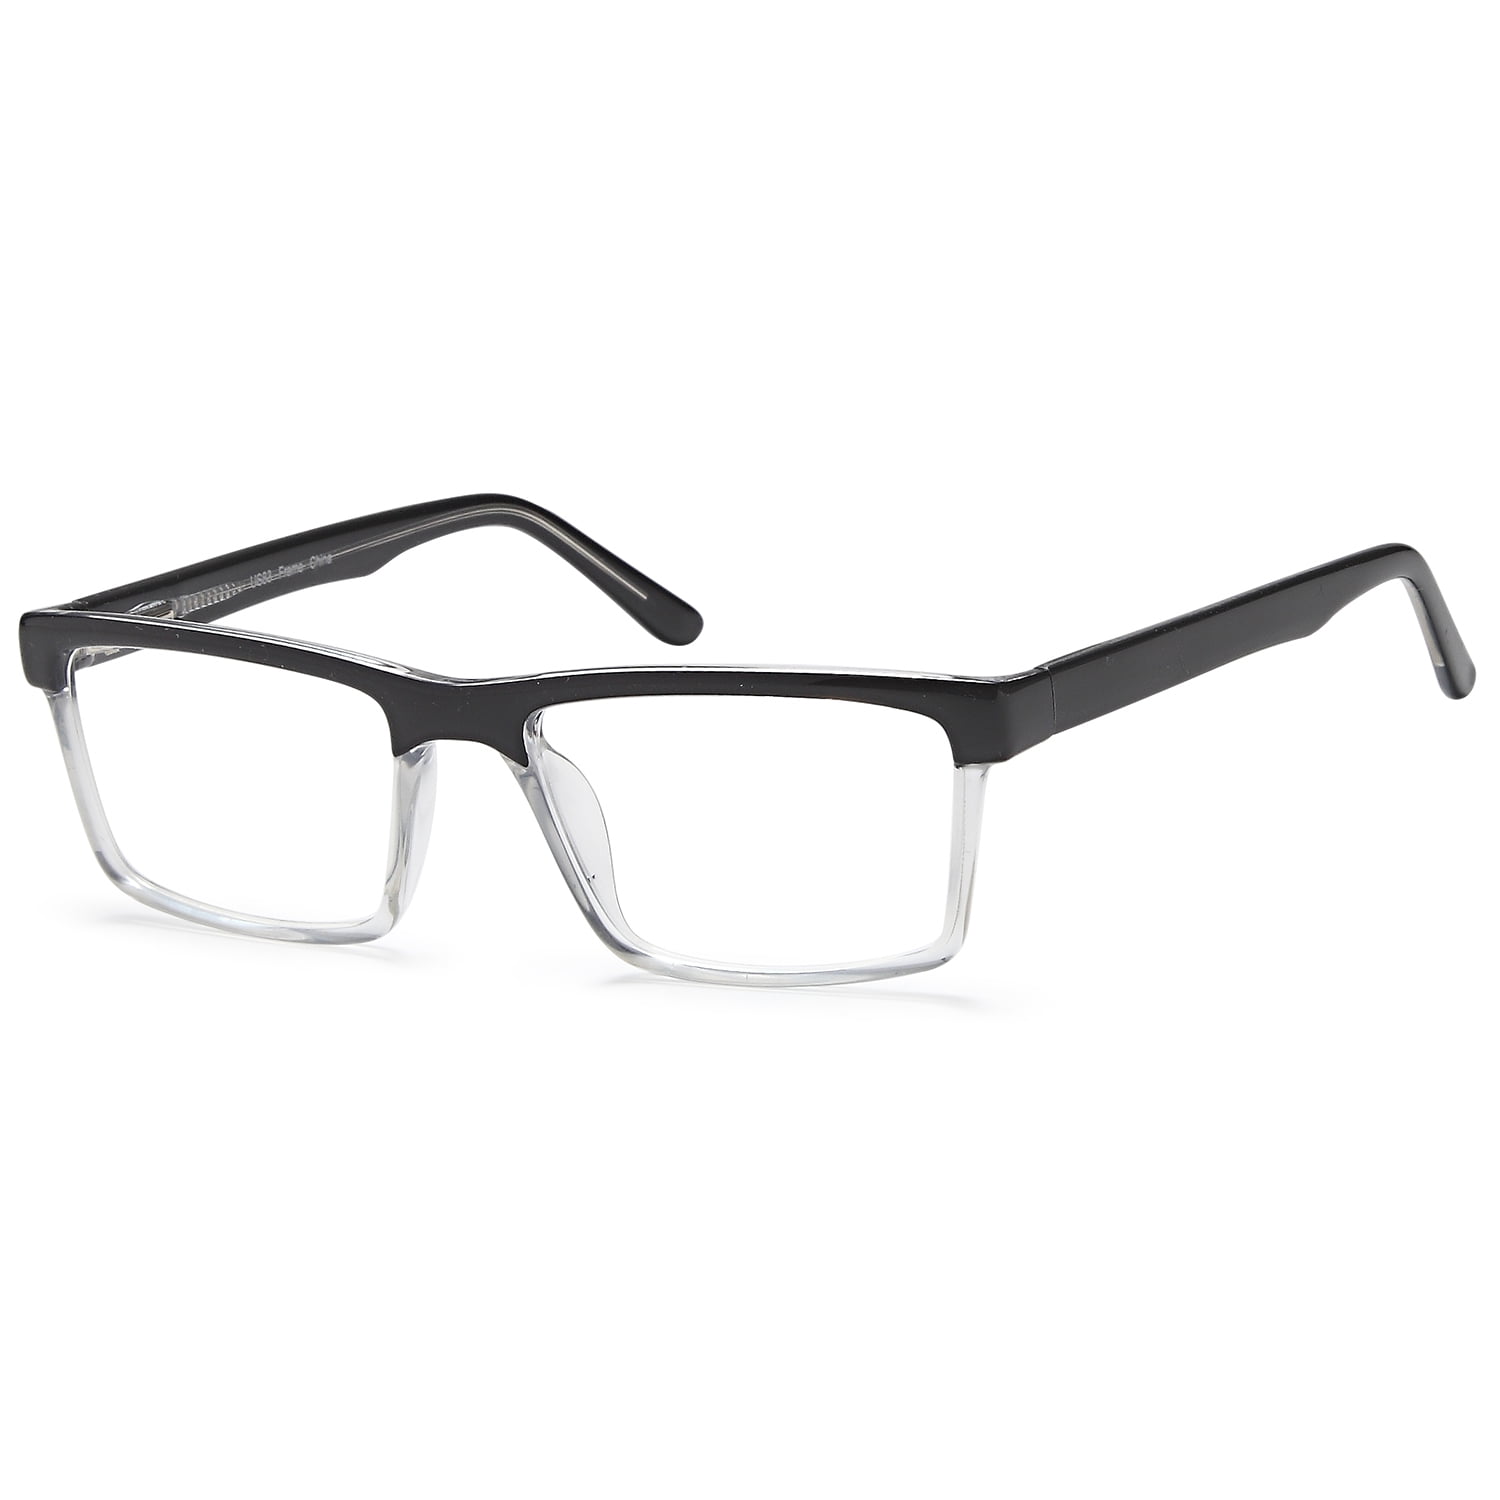 Men's Eyeglasses 56 19 150 Black Clear Plastic - Walmart.com